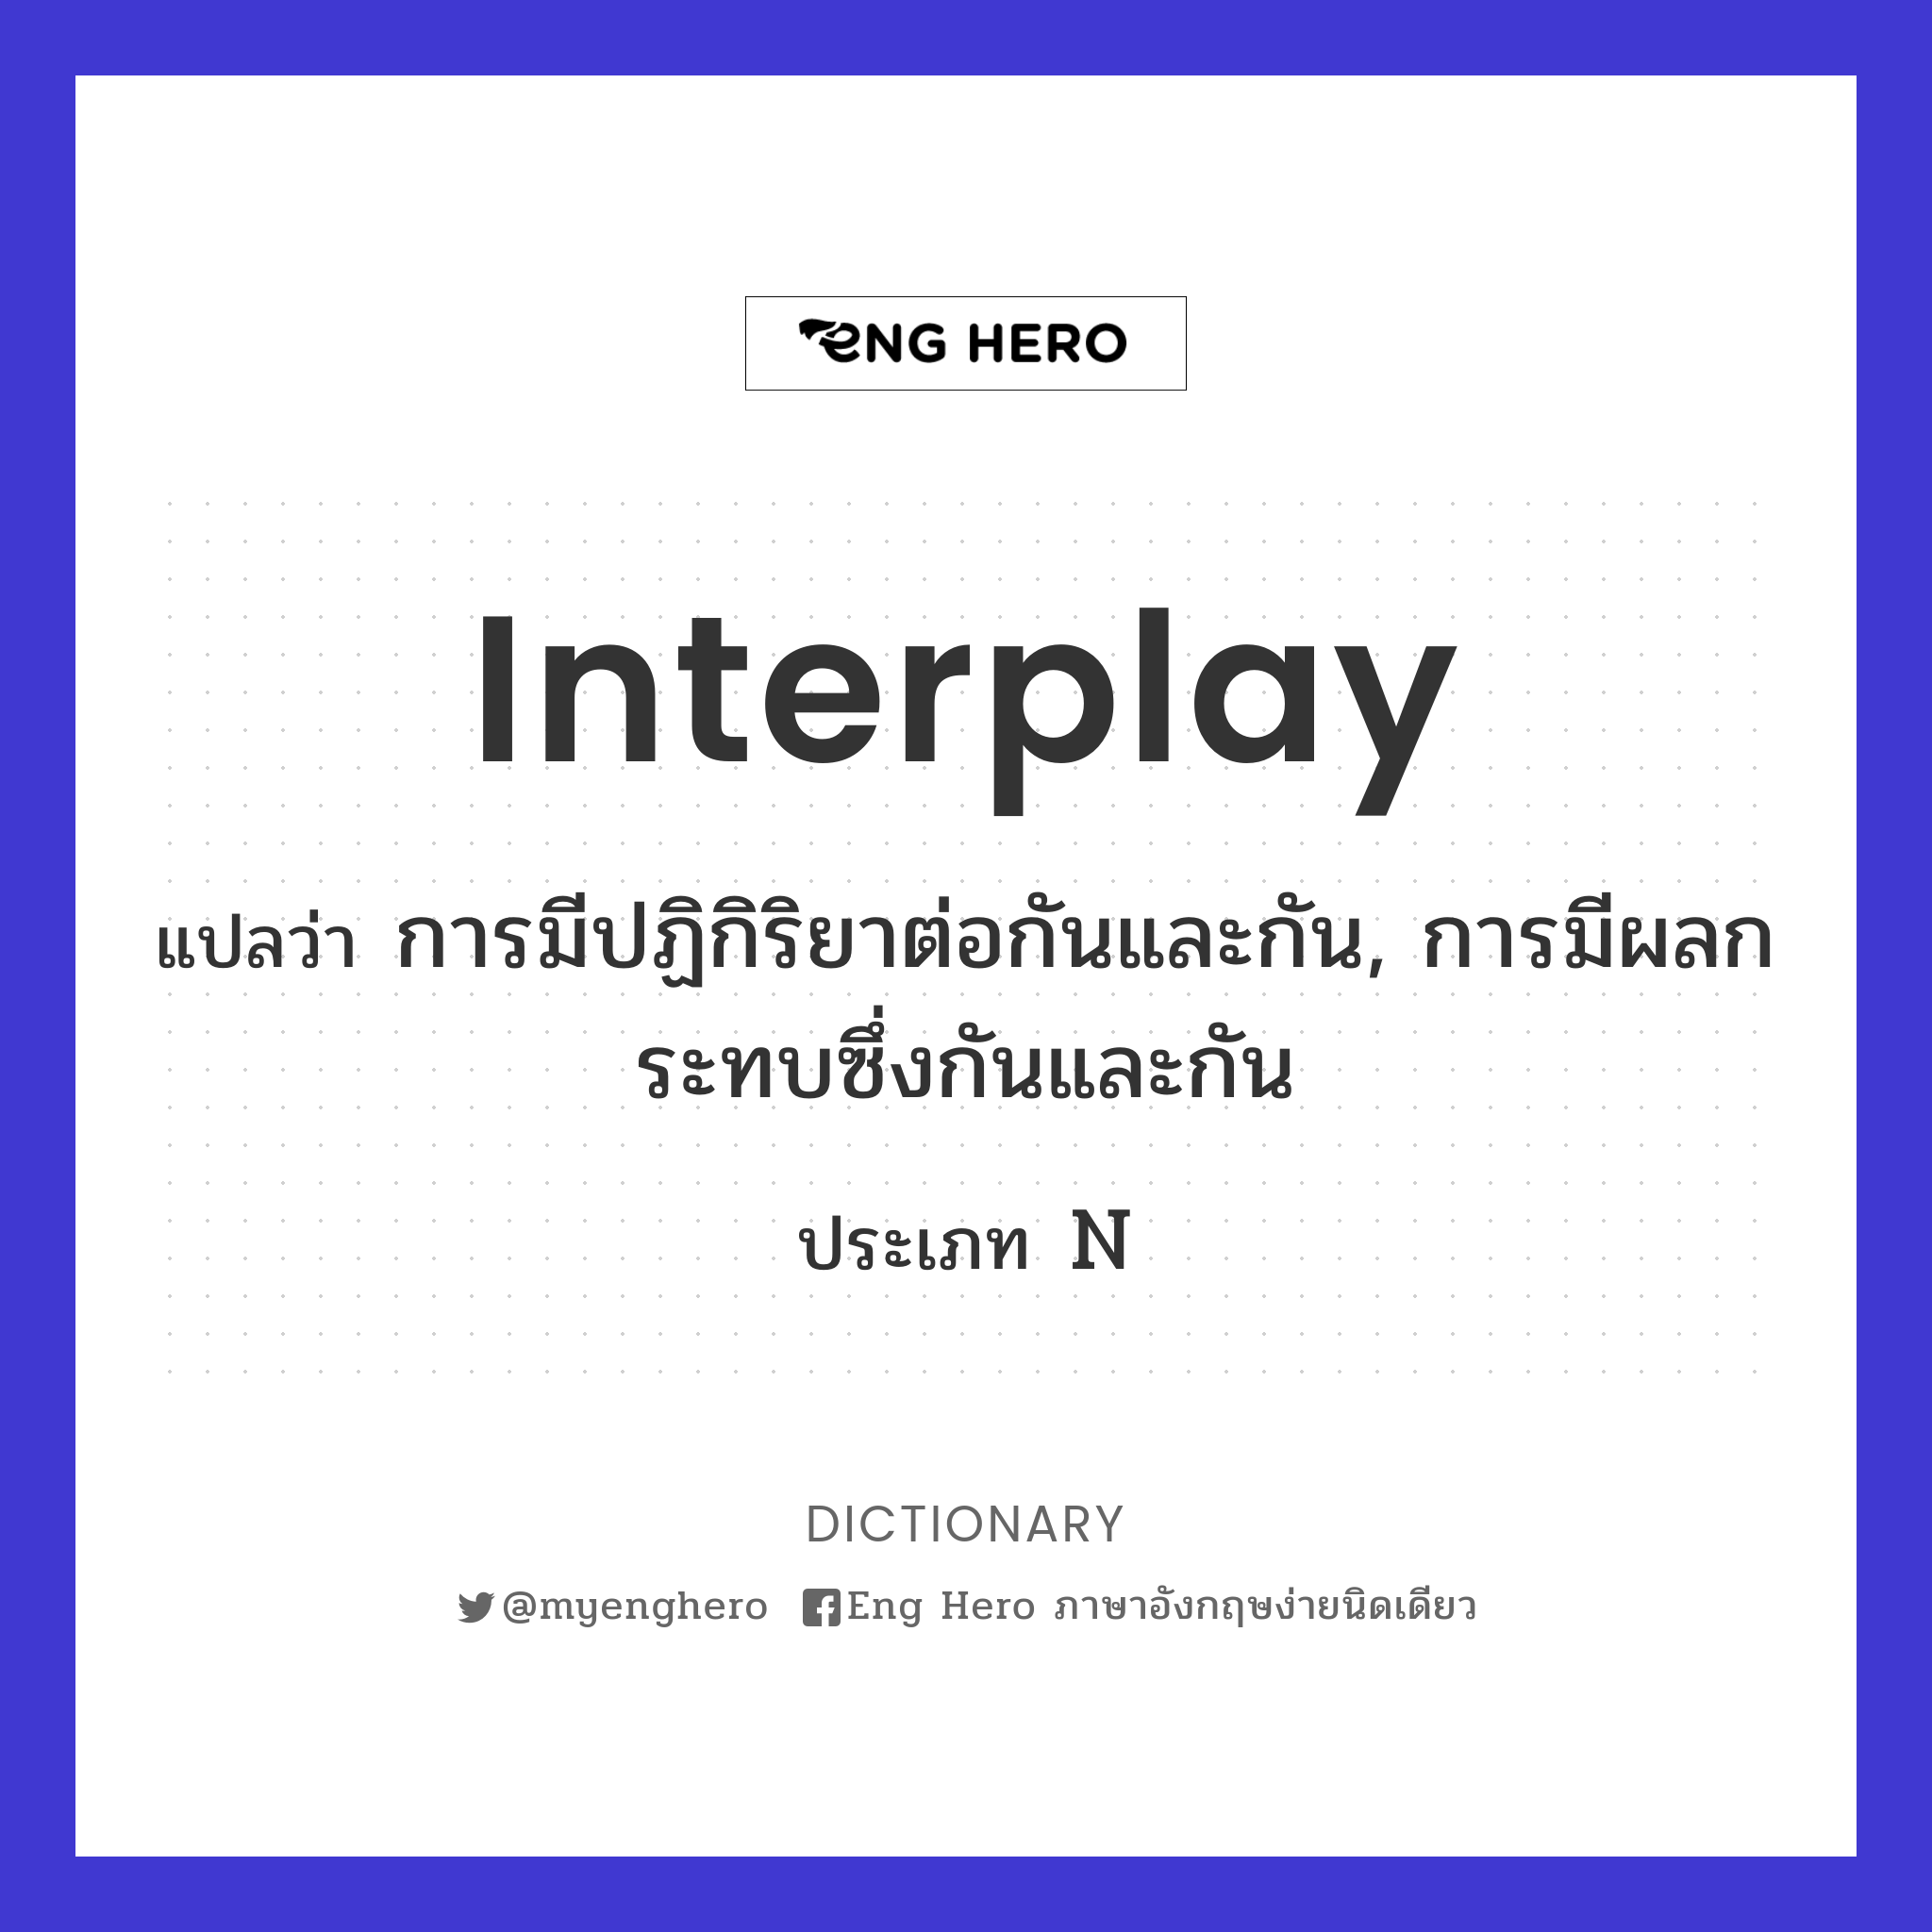 interplay